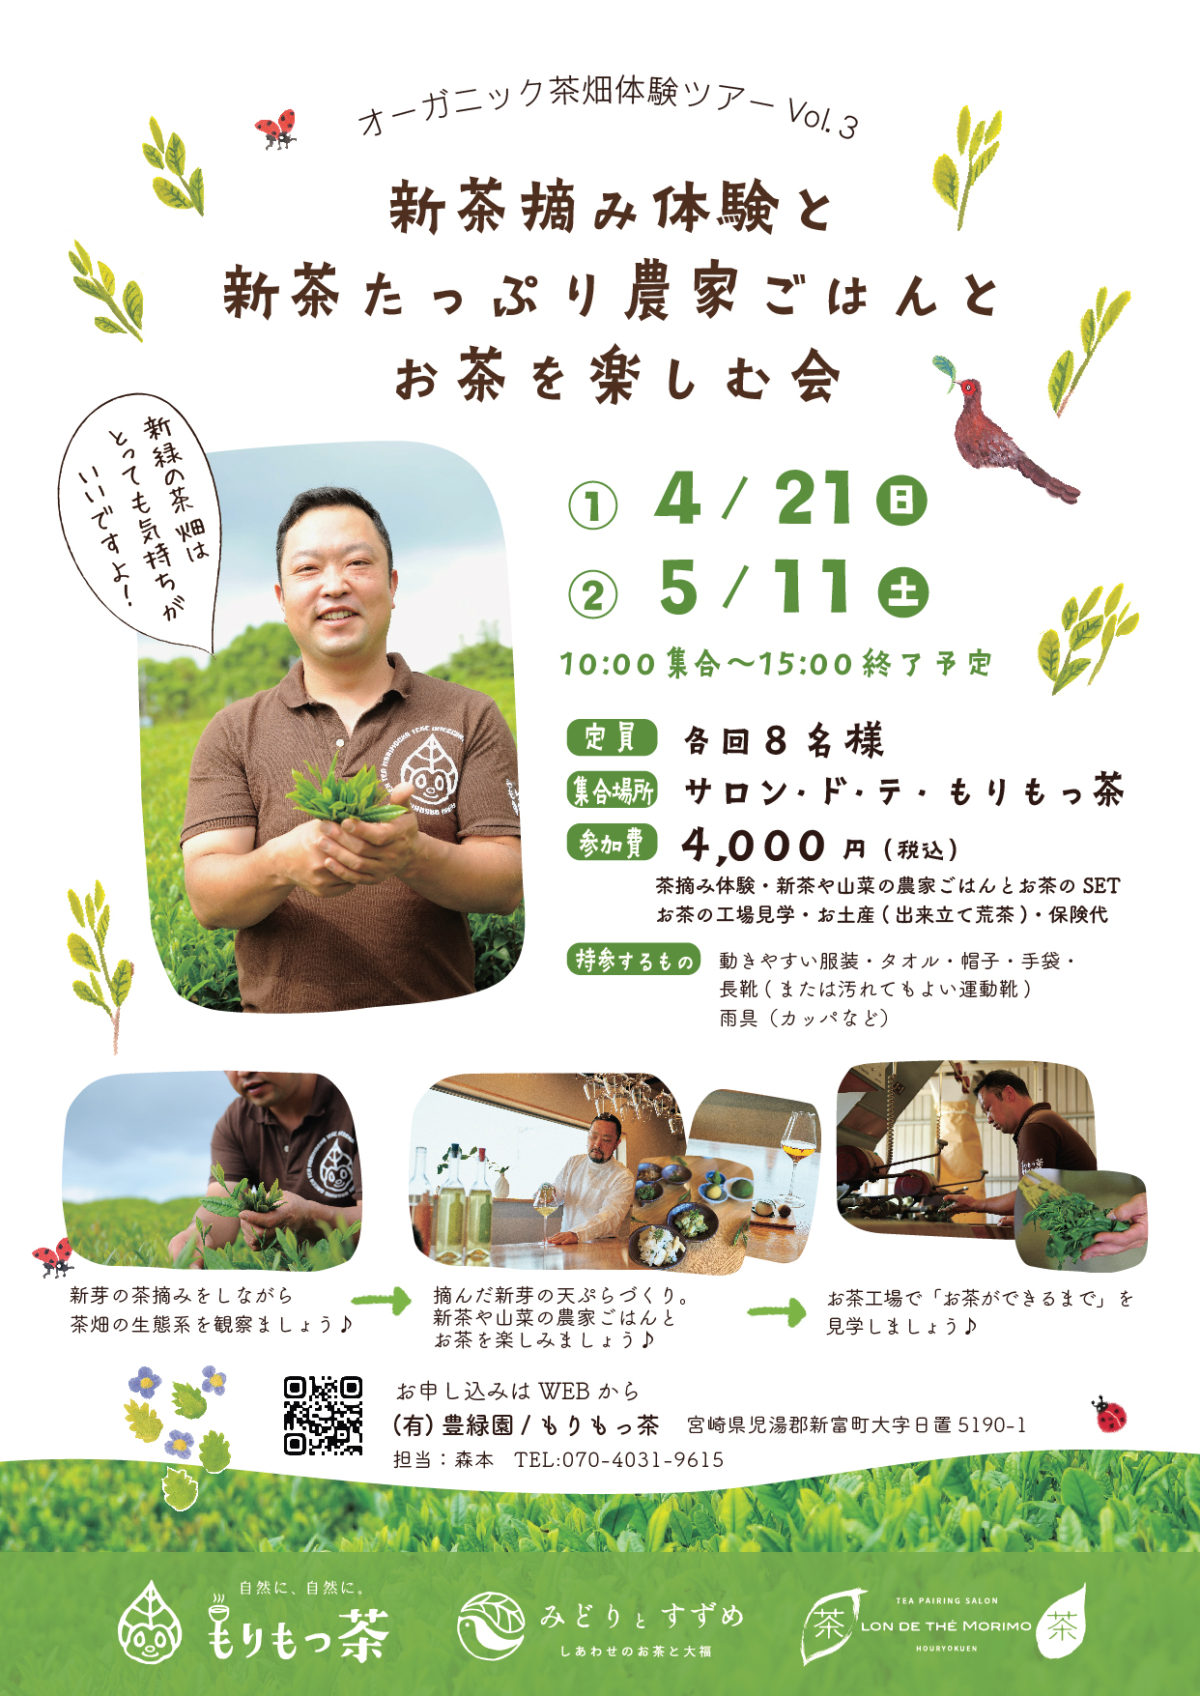 5/11(土)新茶摘み・手揉みのお茶作り体験の会を開催しました